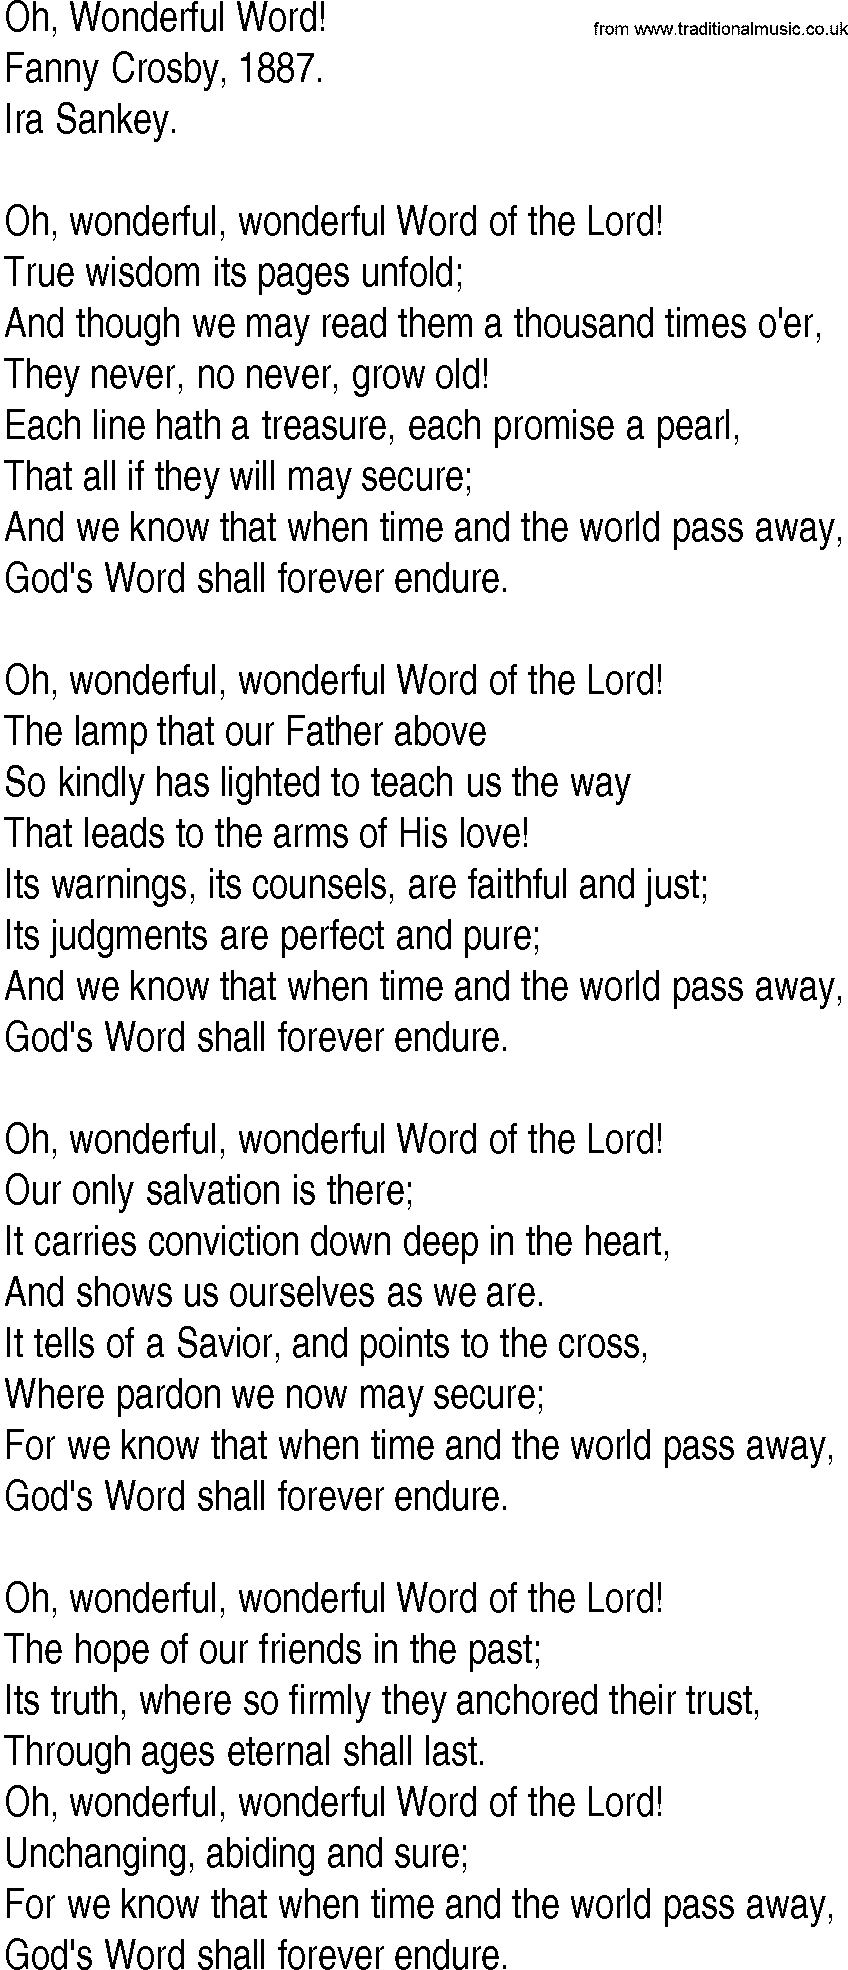 Hymn and Gospel Song: Oh, Wonderful Word! by Fanny Crosby lyrics